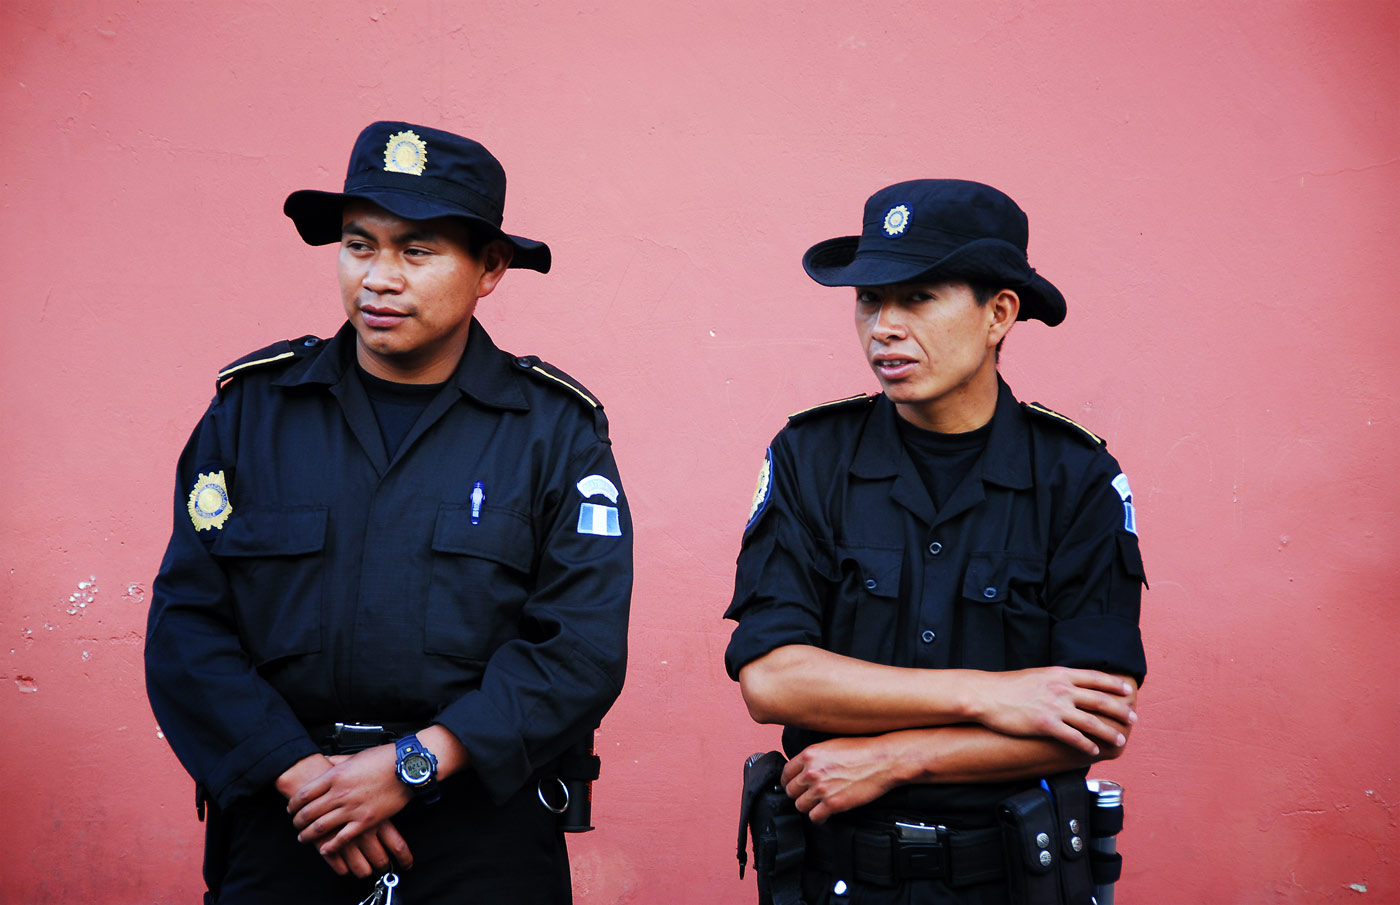 Policemen, Antigua, 2006